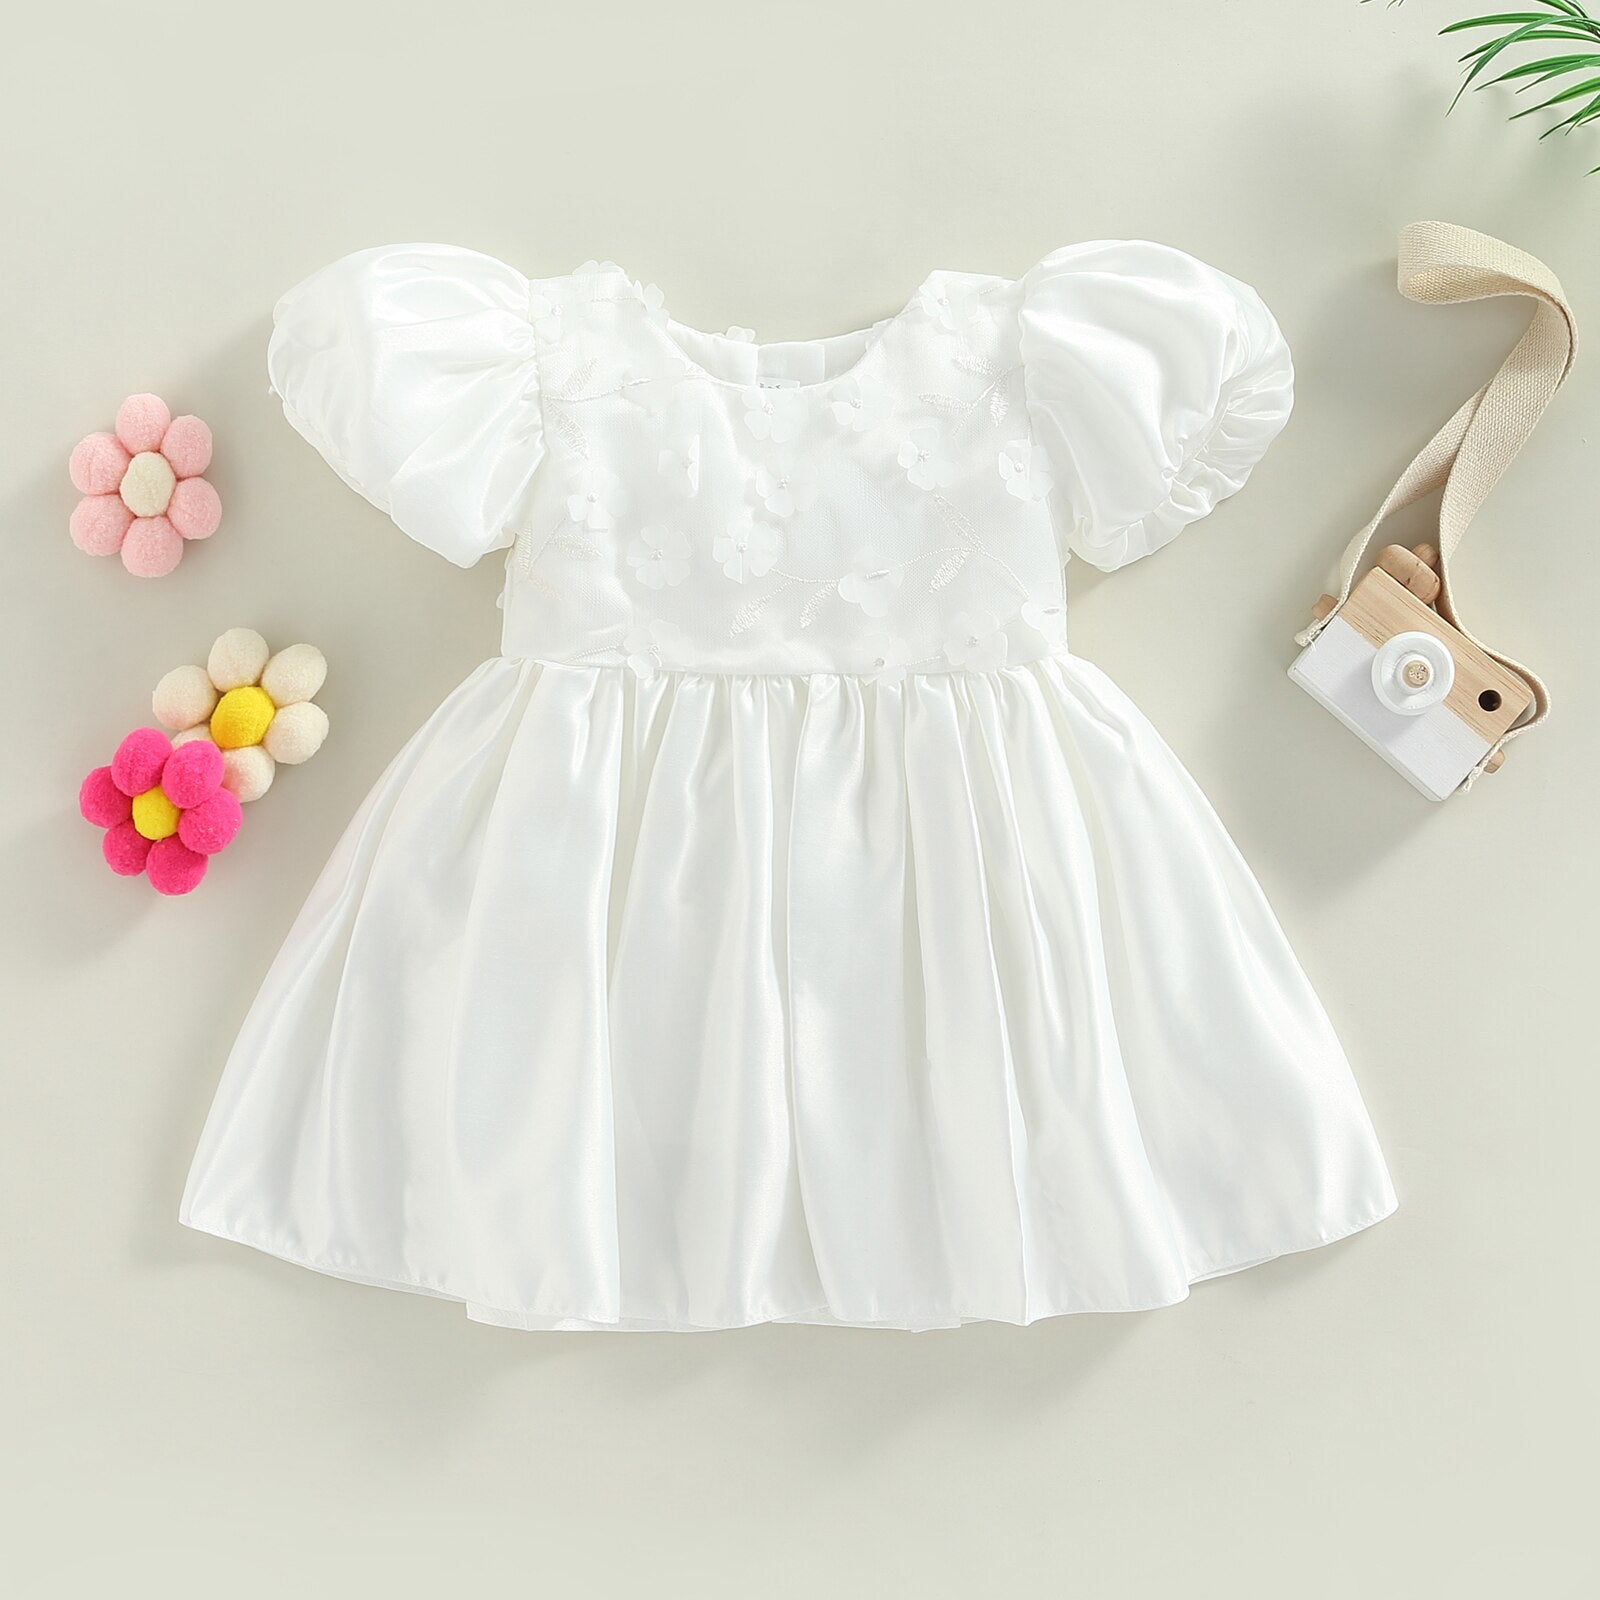 Vestido Infantil Princesa vestido Loja Click Certo Branco 2-3 anos 57cm 